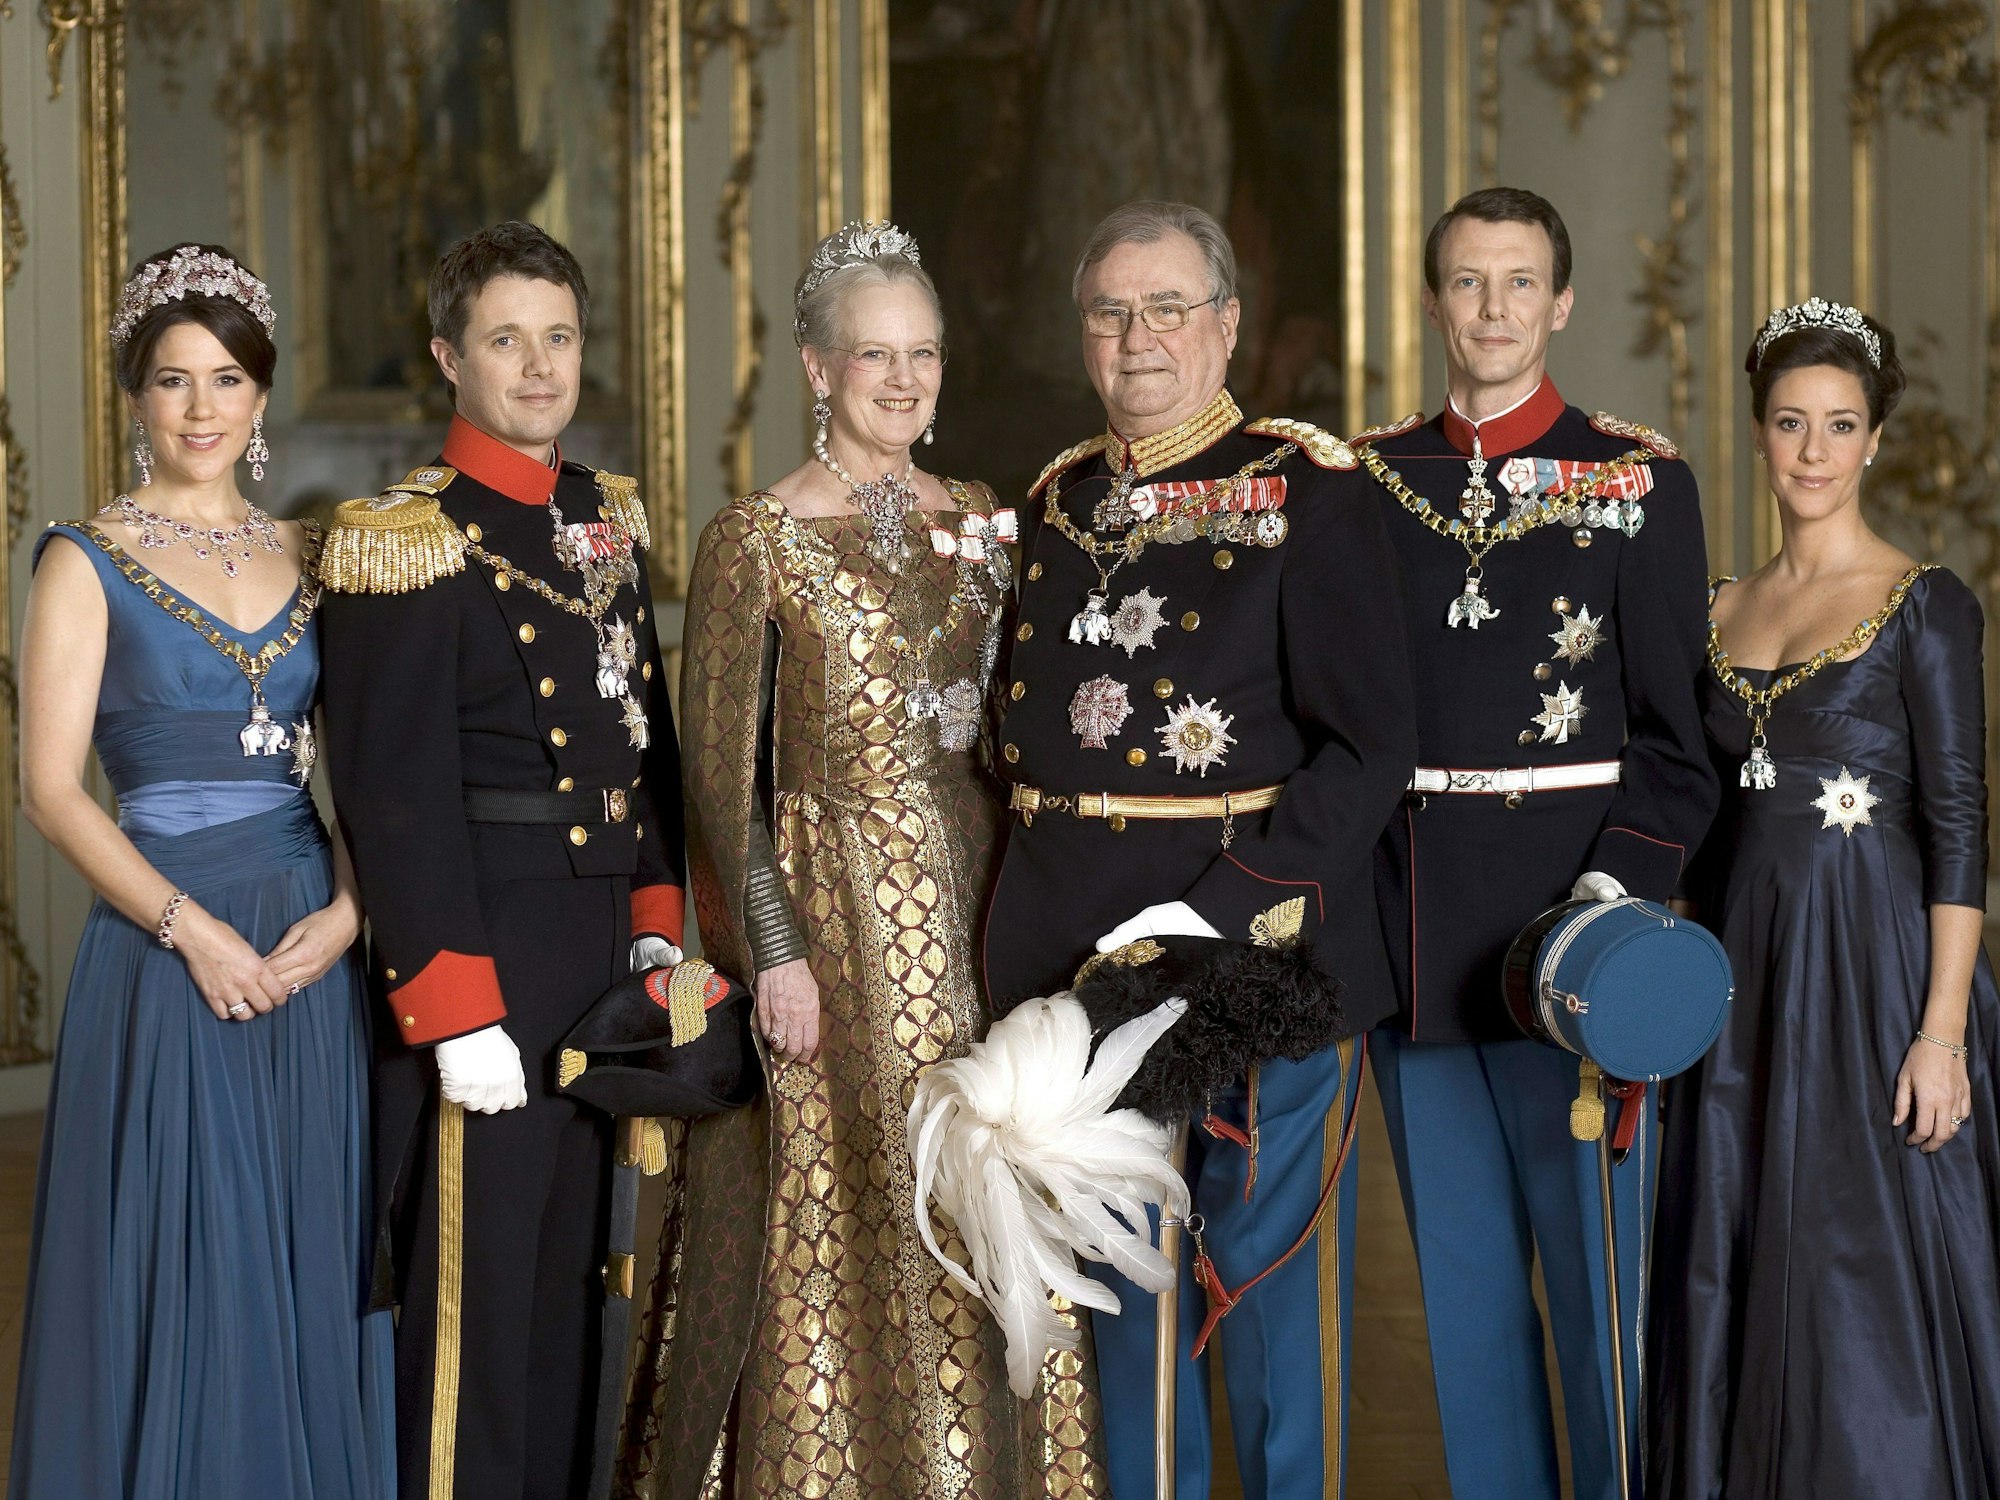 Das Foto aus dem Jahr 2009 zeigt Dänemarks königliche Familie, Kronprinzessin Mary, Kronprinz Frederik, Königin Margrethe II., Prinz Henrik, Prinz Joachim und Prinzessin Marie (v.l.n.r.) im Amalienburg Palast in Kopenhagen.